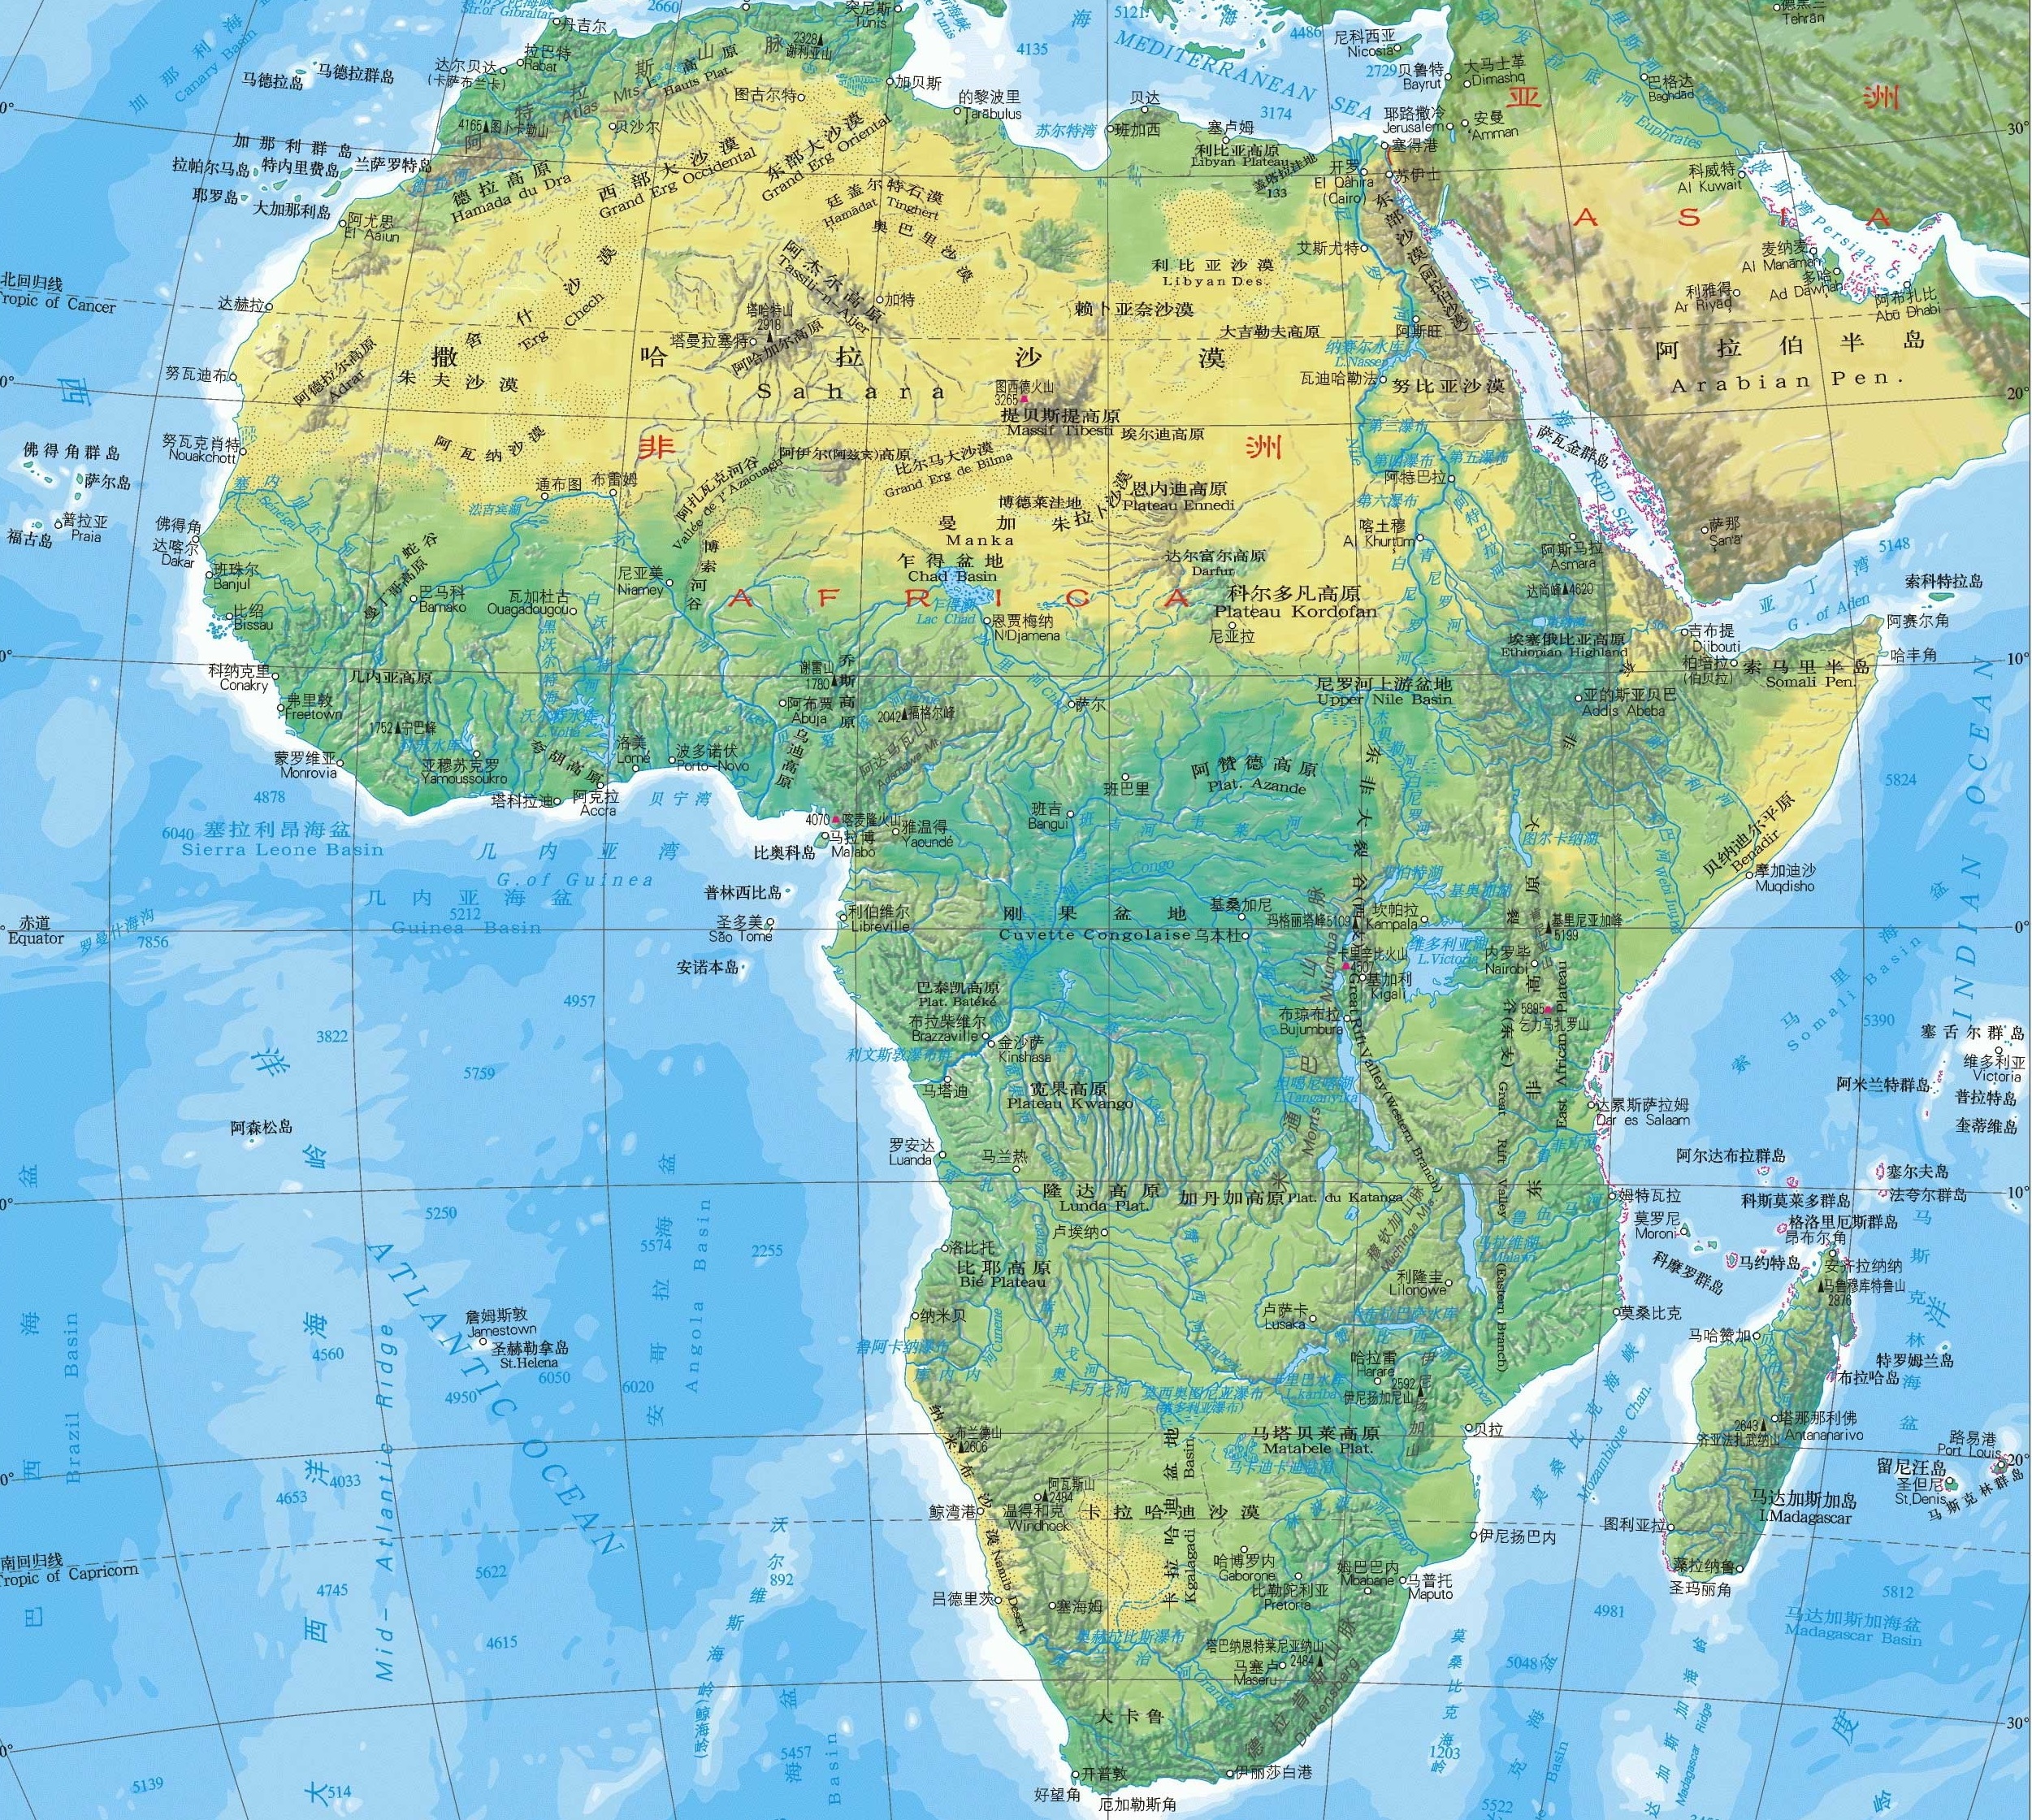 非洲的地形分布图片